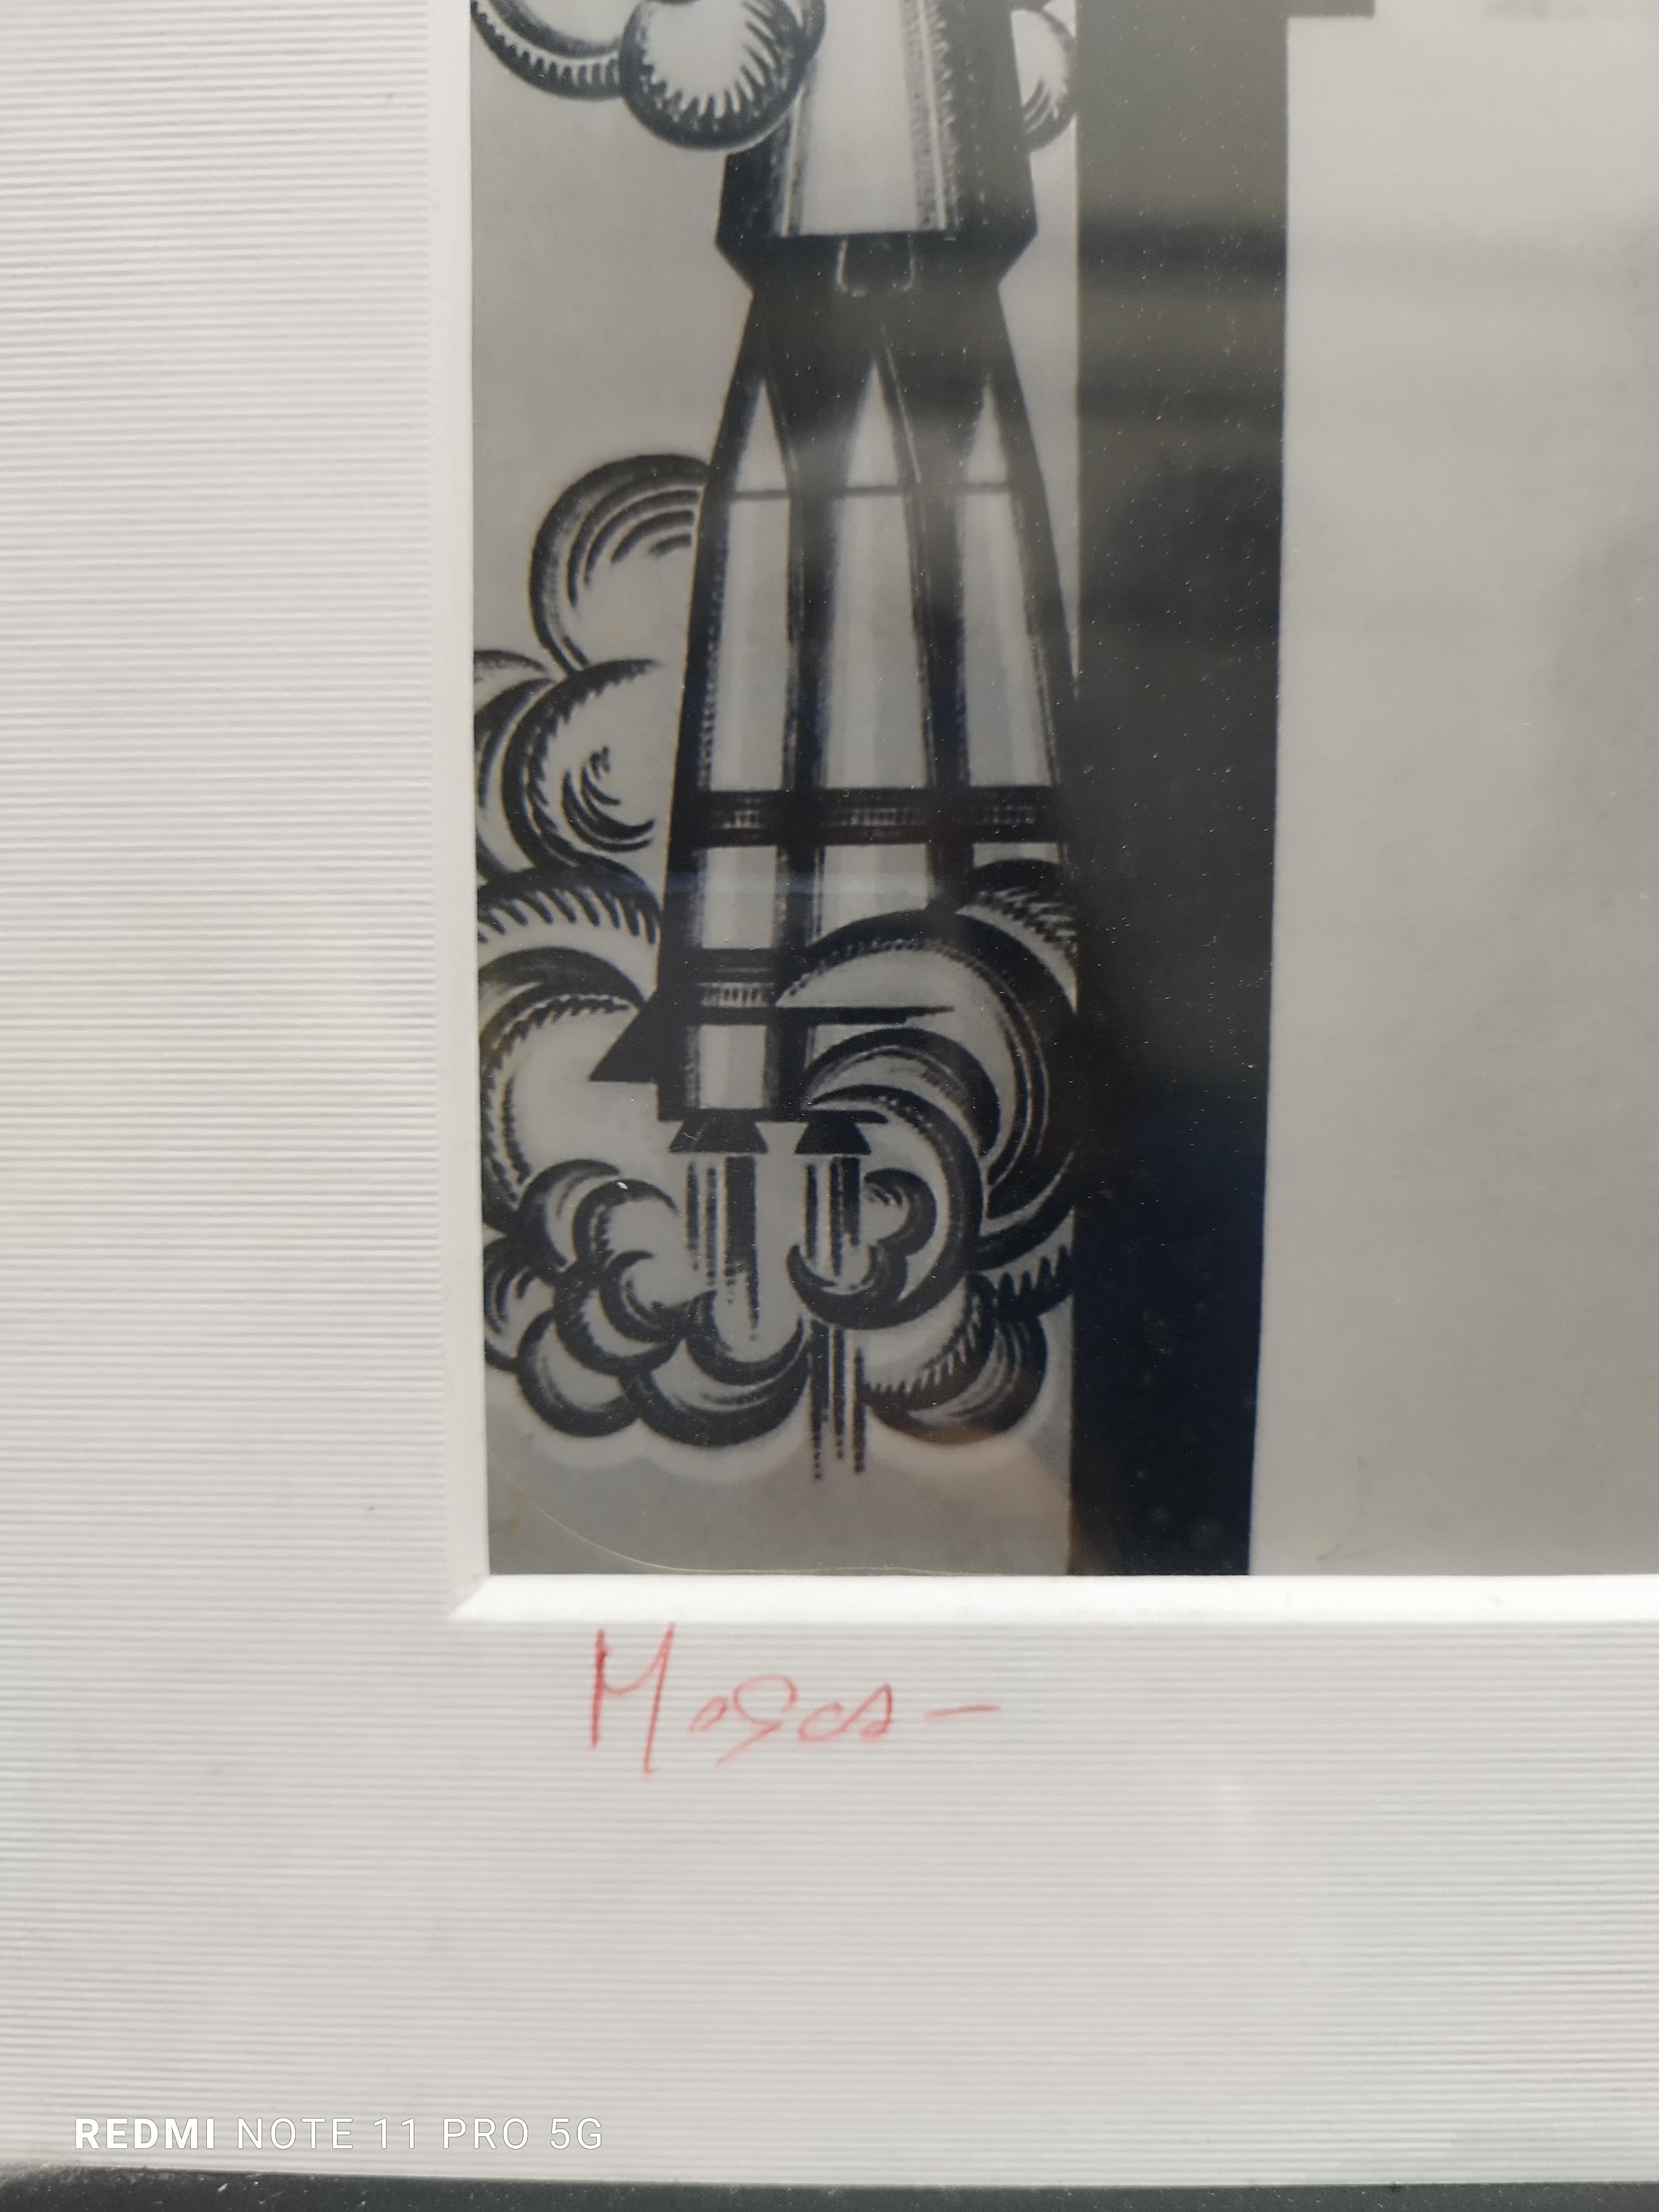 MOSKAU - Schwarz-Weiß-Fotografie auf Fotopapier, Sergio del Vecchio 1986 (Fotorealismus), Photograph, von Unknown